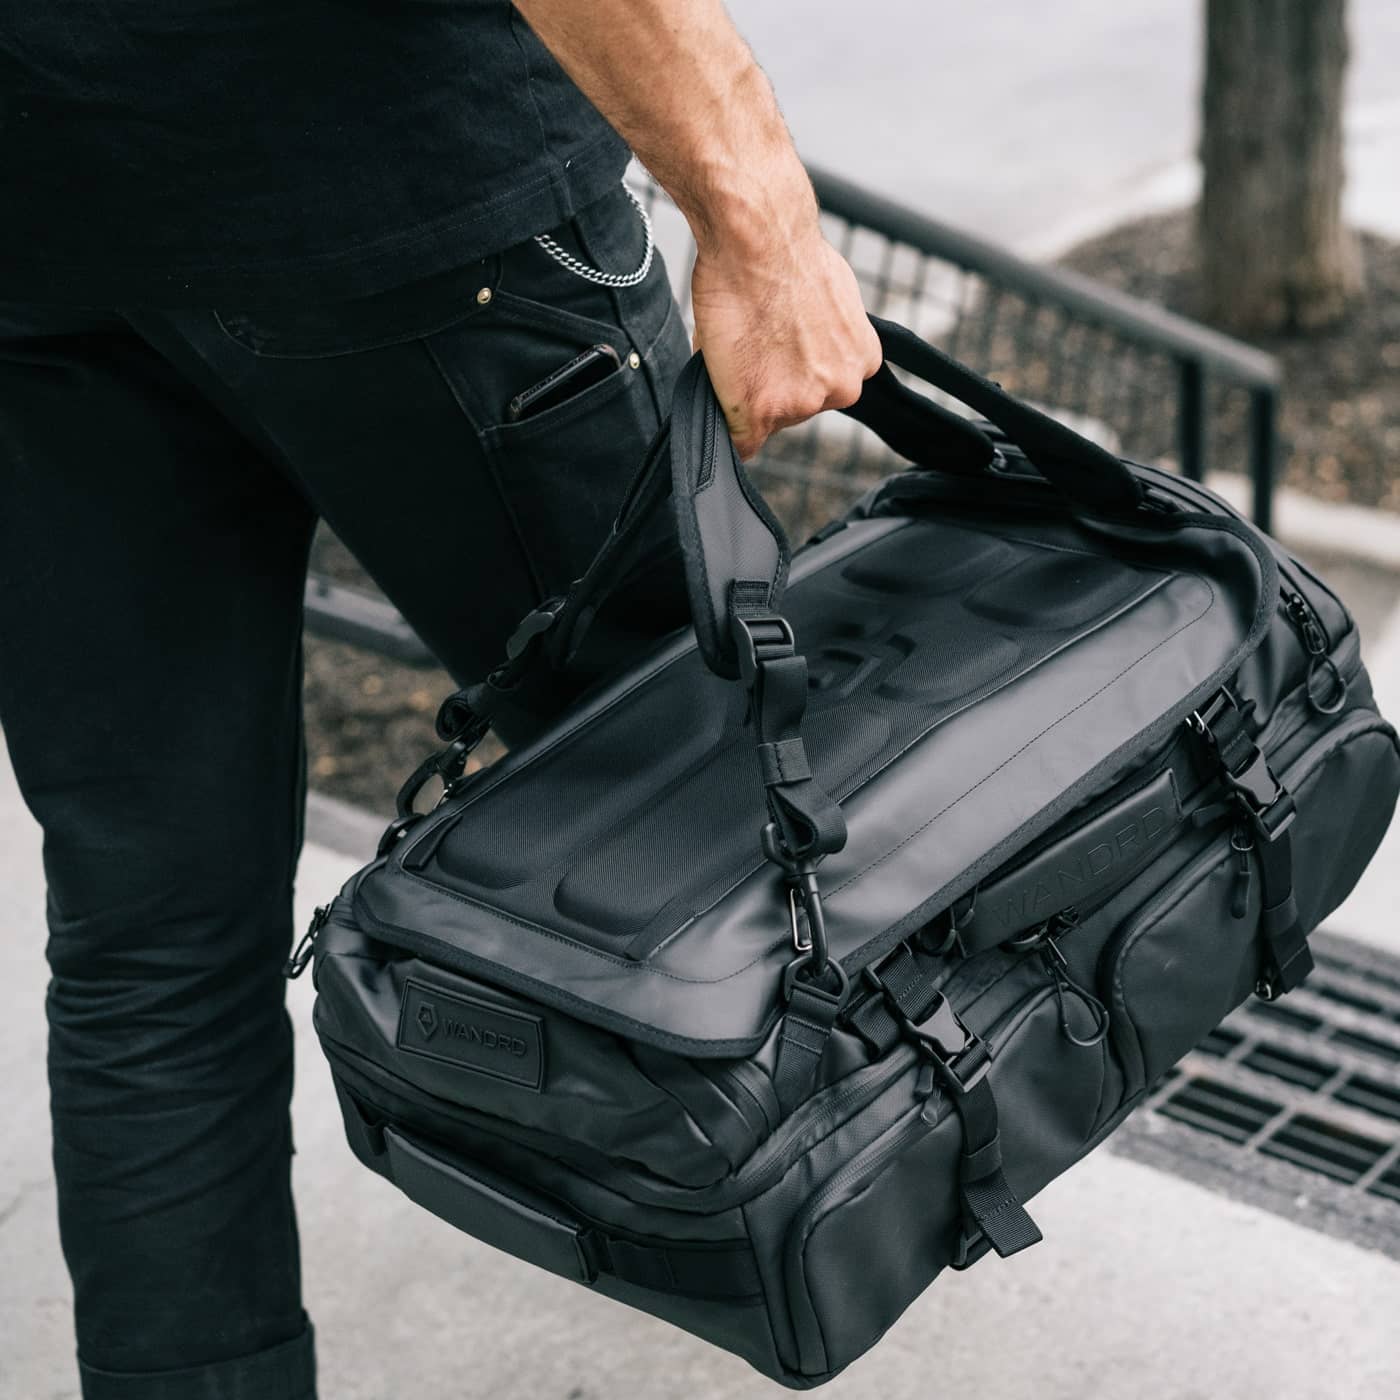 FlyGear Super Light Cabin Backpack Rucksack Flight Travel Carry On Luggage Bag 